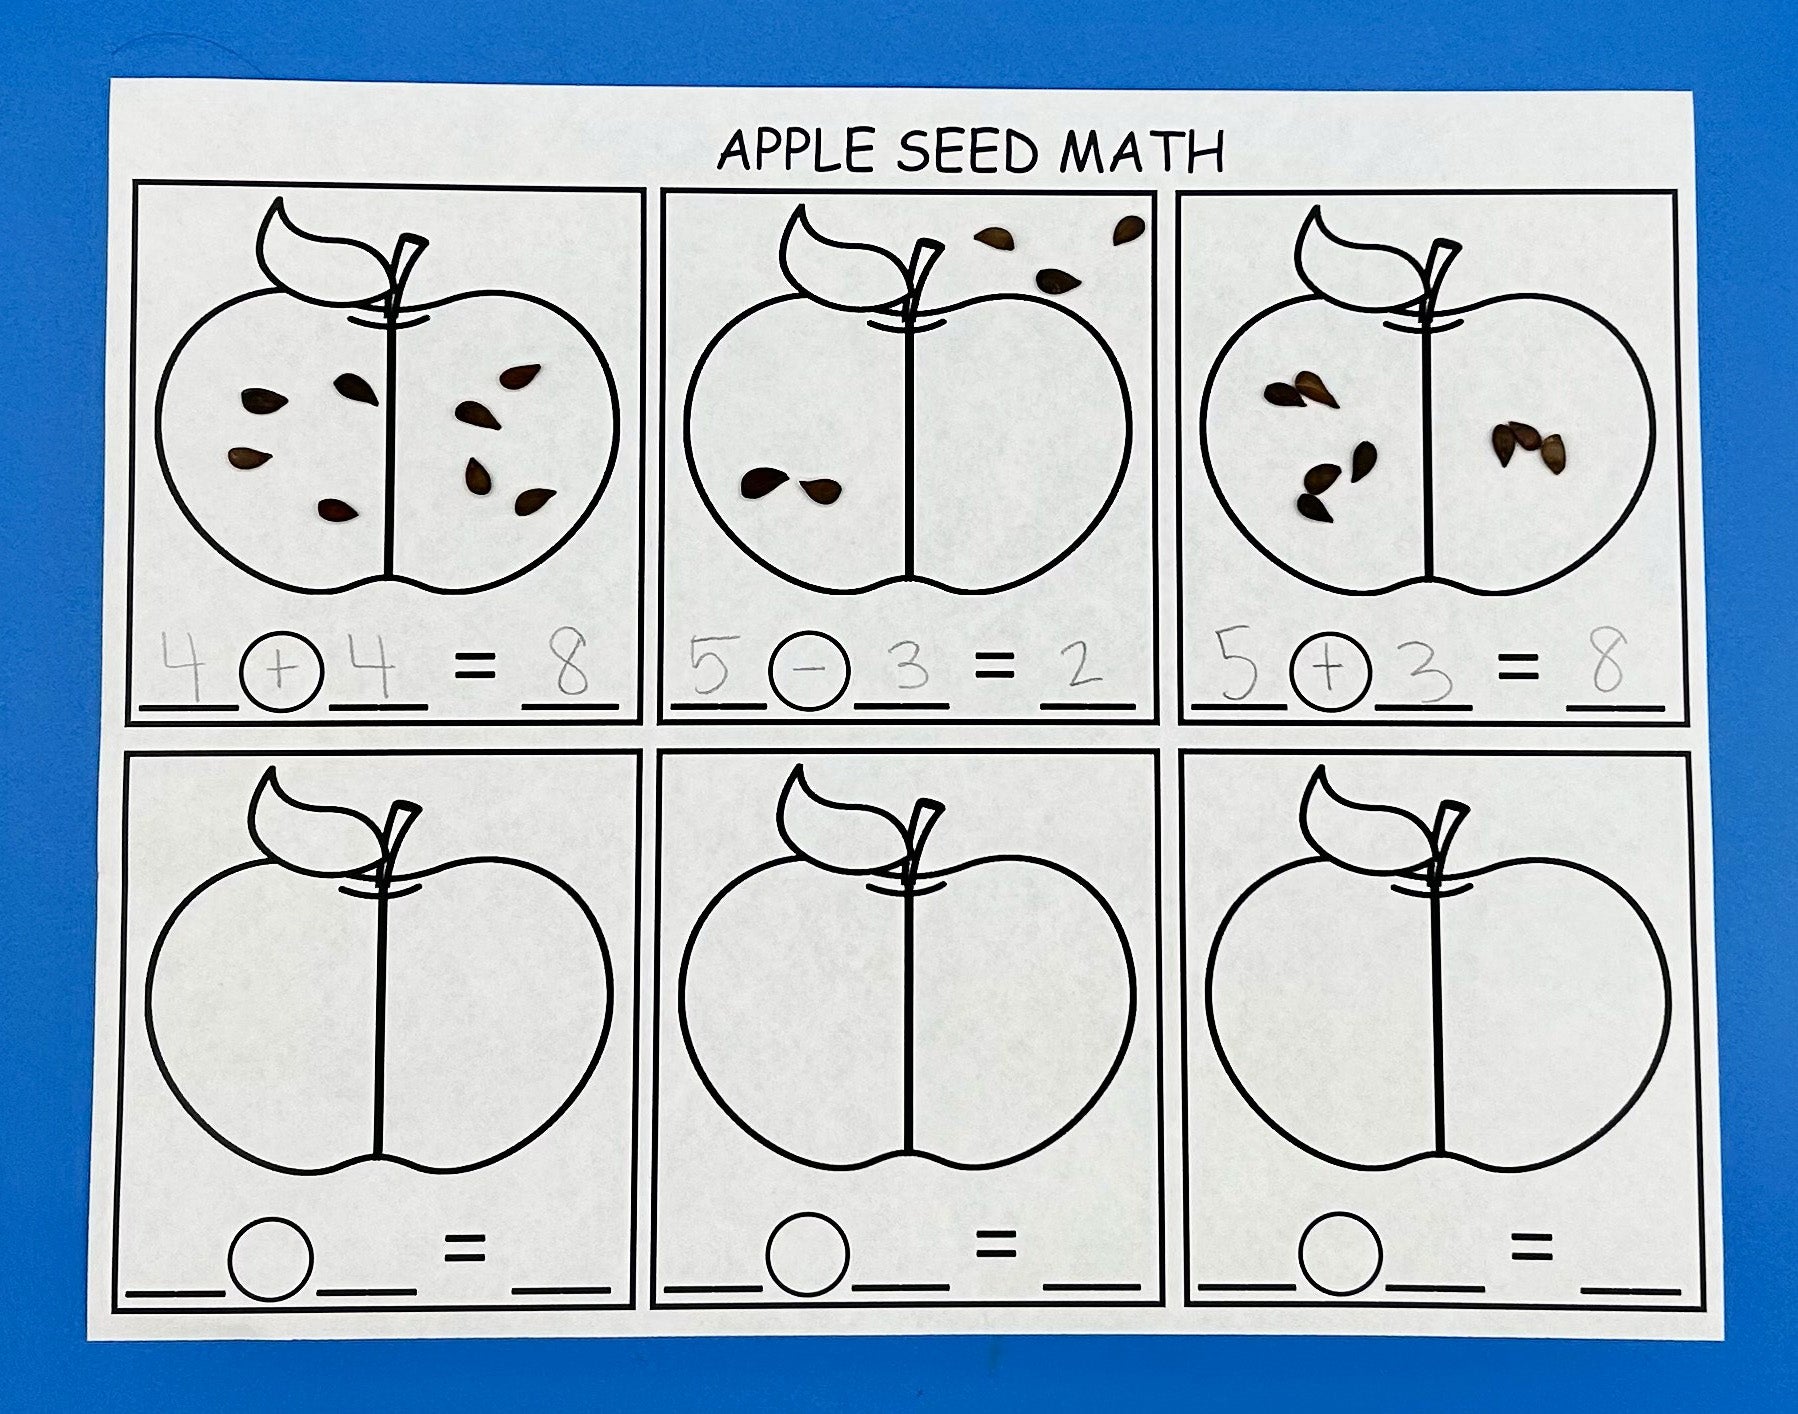 Apple seed math